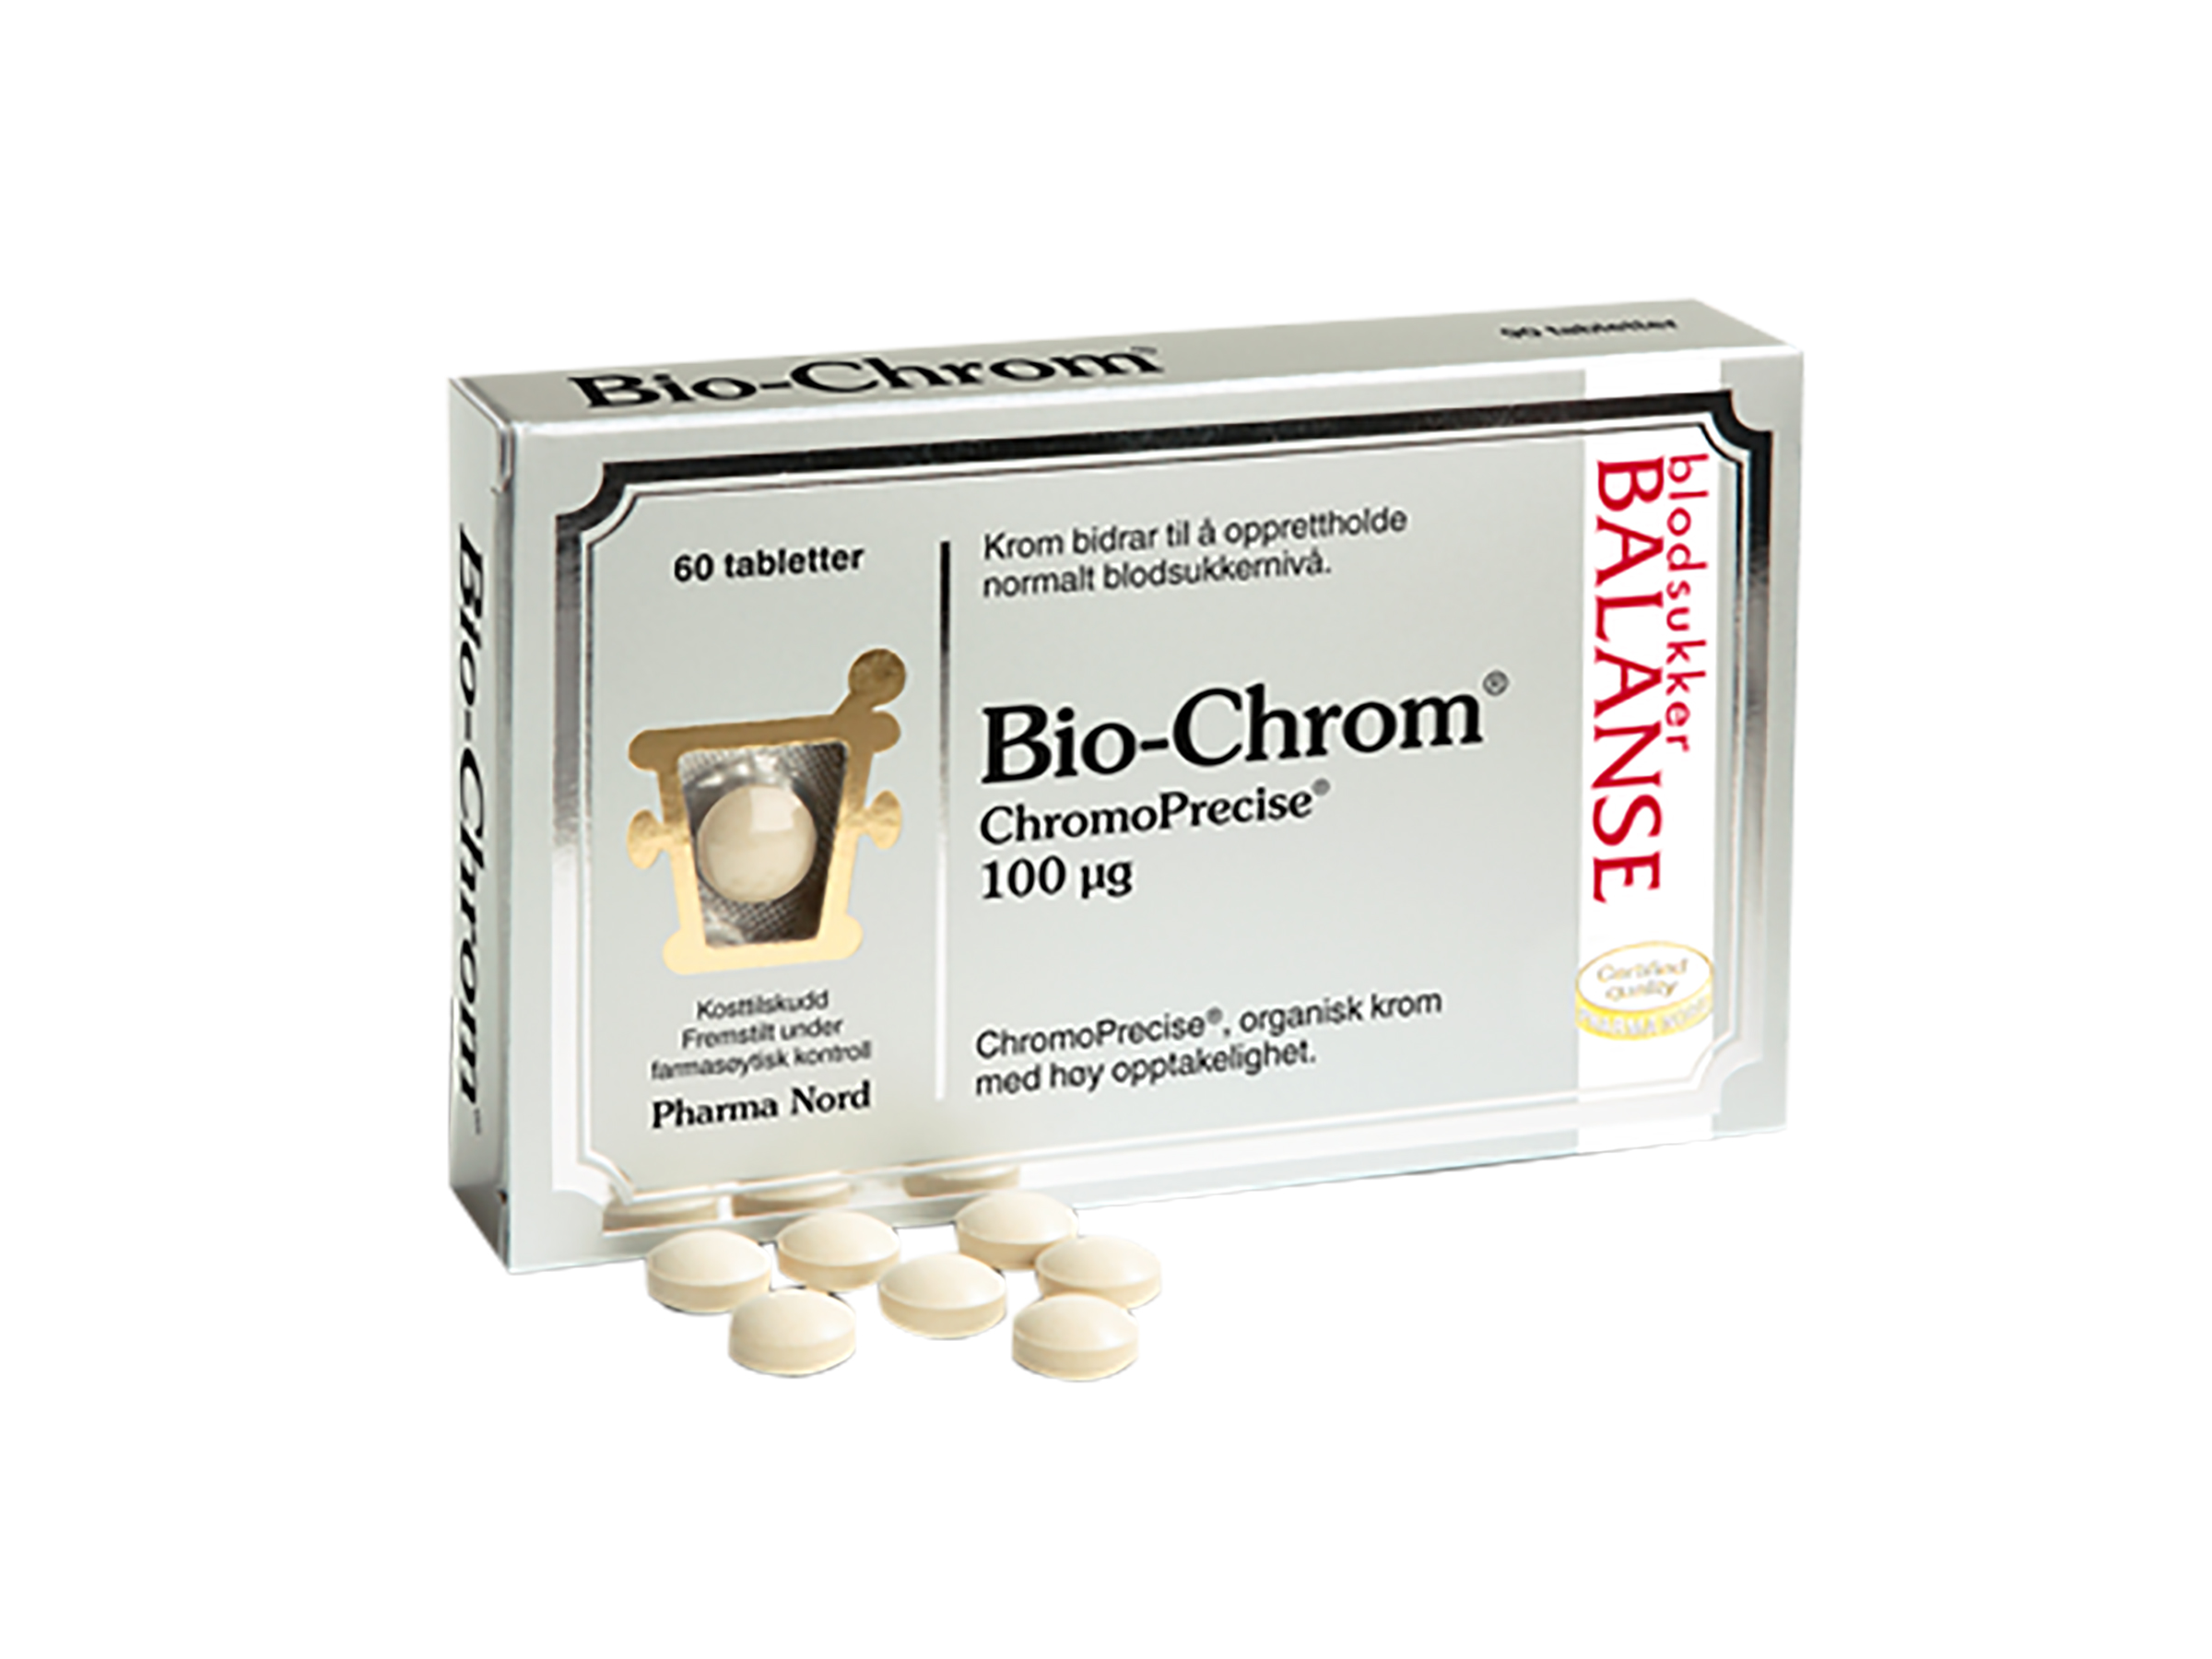 Bio-Chrom ChromoPrecise 100mcg, 60 tabletter